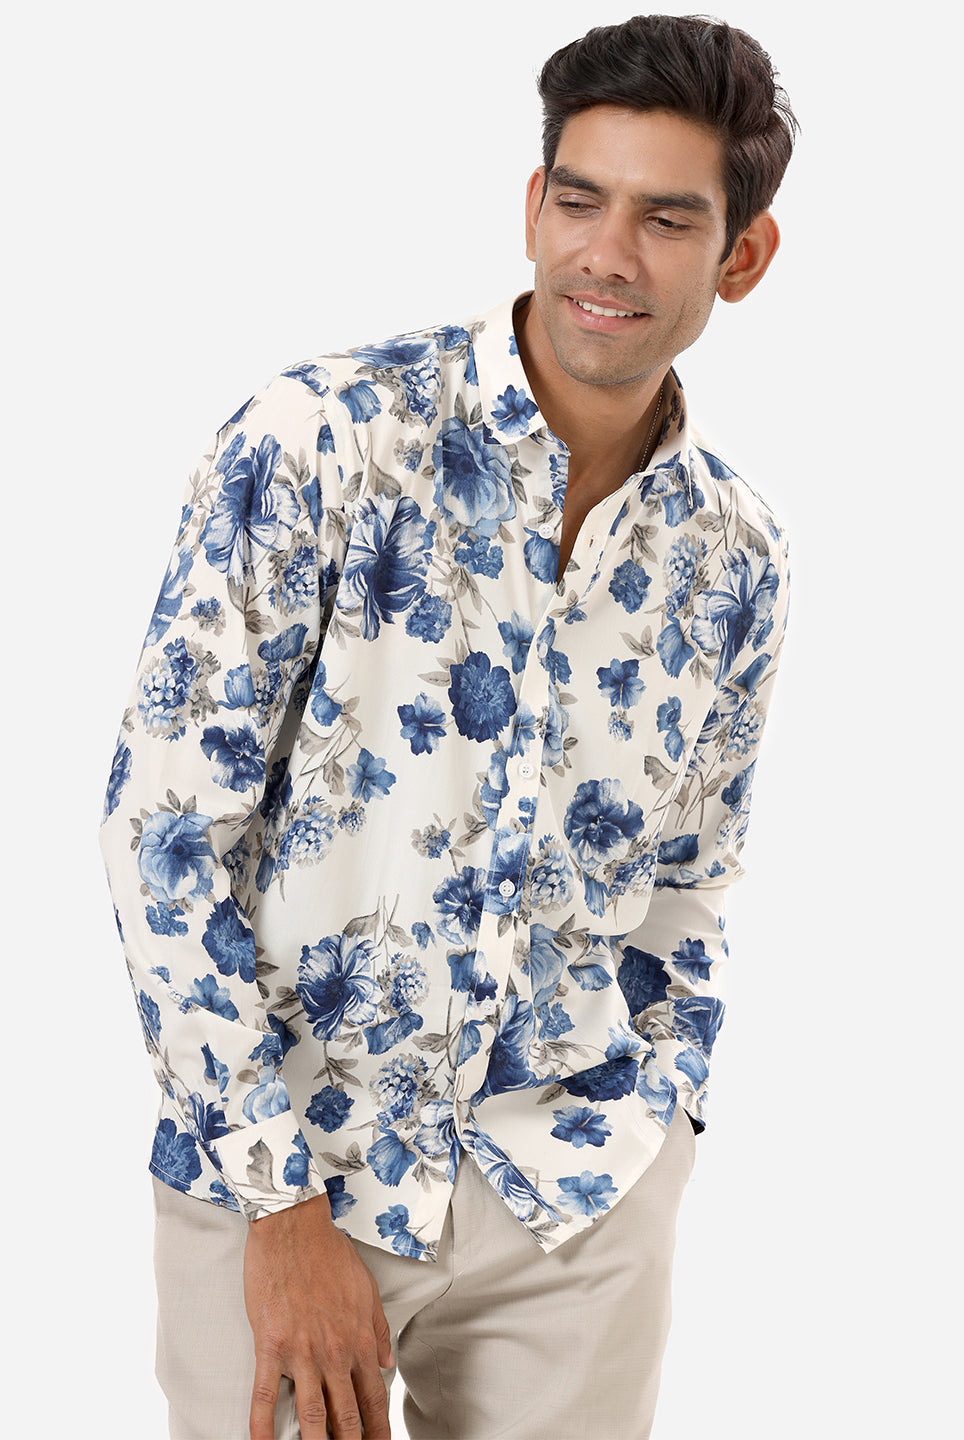 floral printed shirts